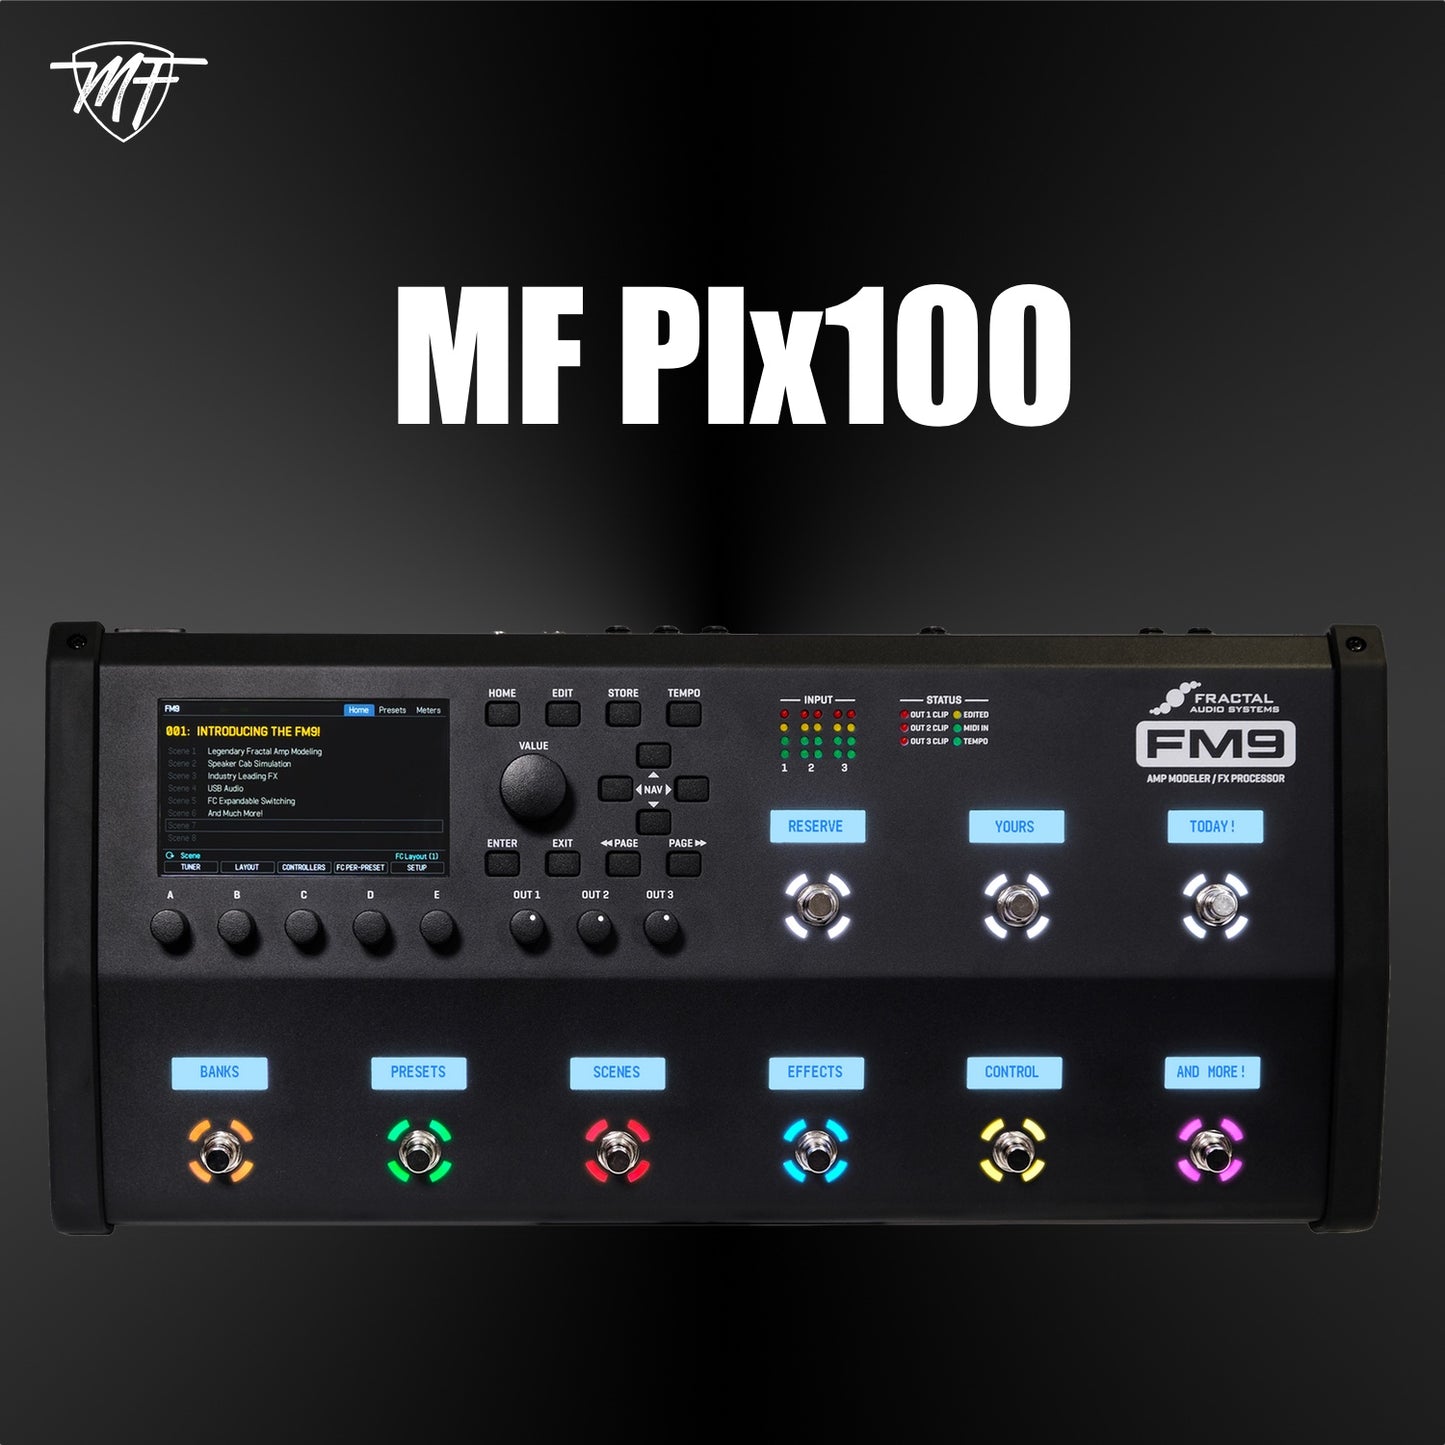 MF Plx100 FM9